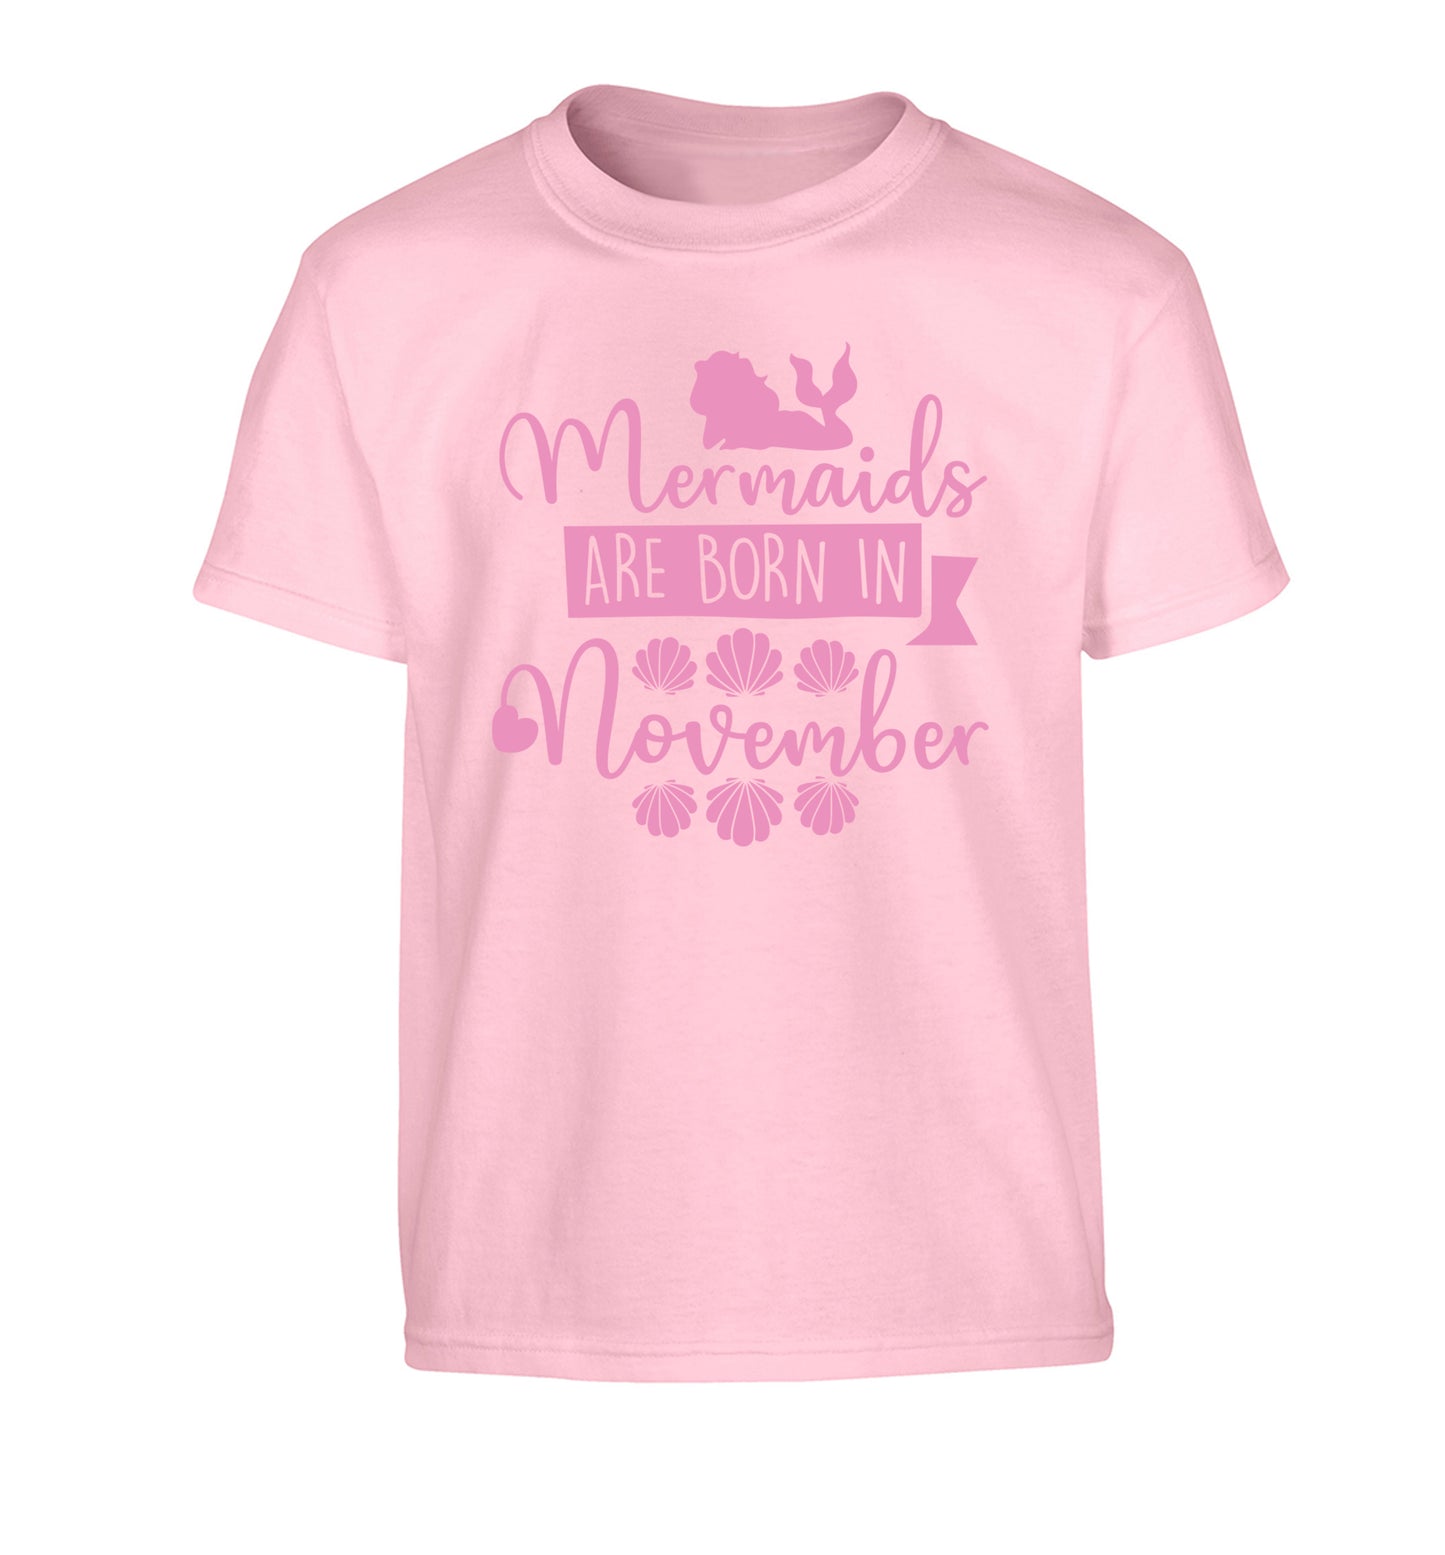 Mermaids are born in November Children's light pink Tshirt 12-13 Years